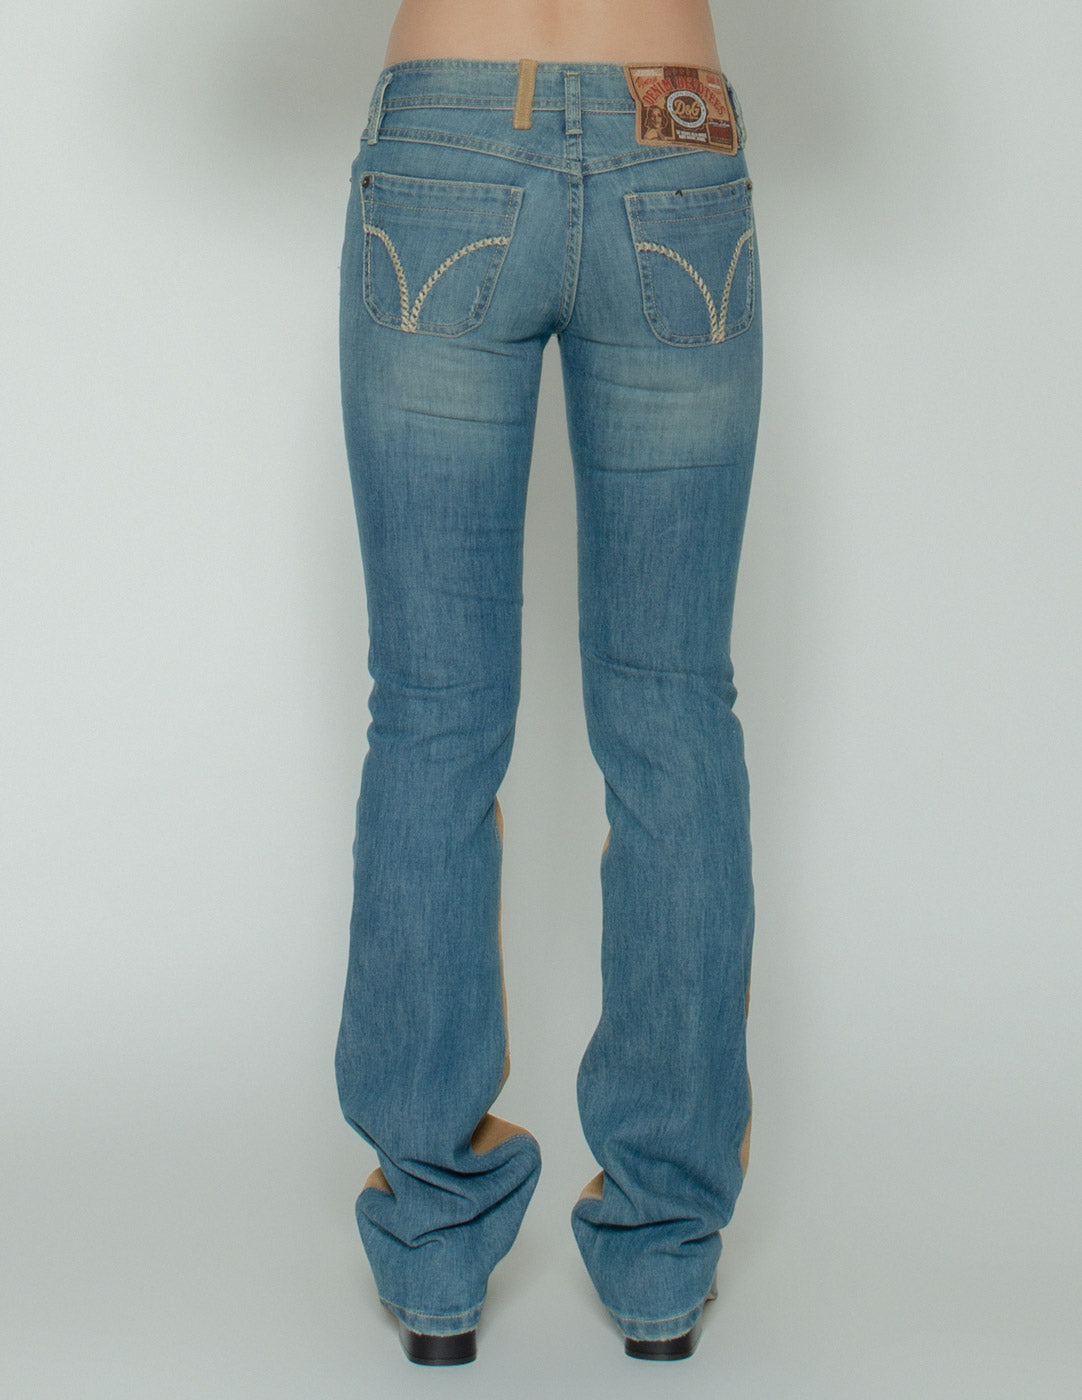 D&G vintage low-rise suede jeans back detail